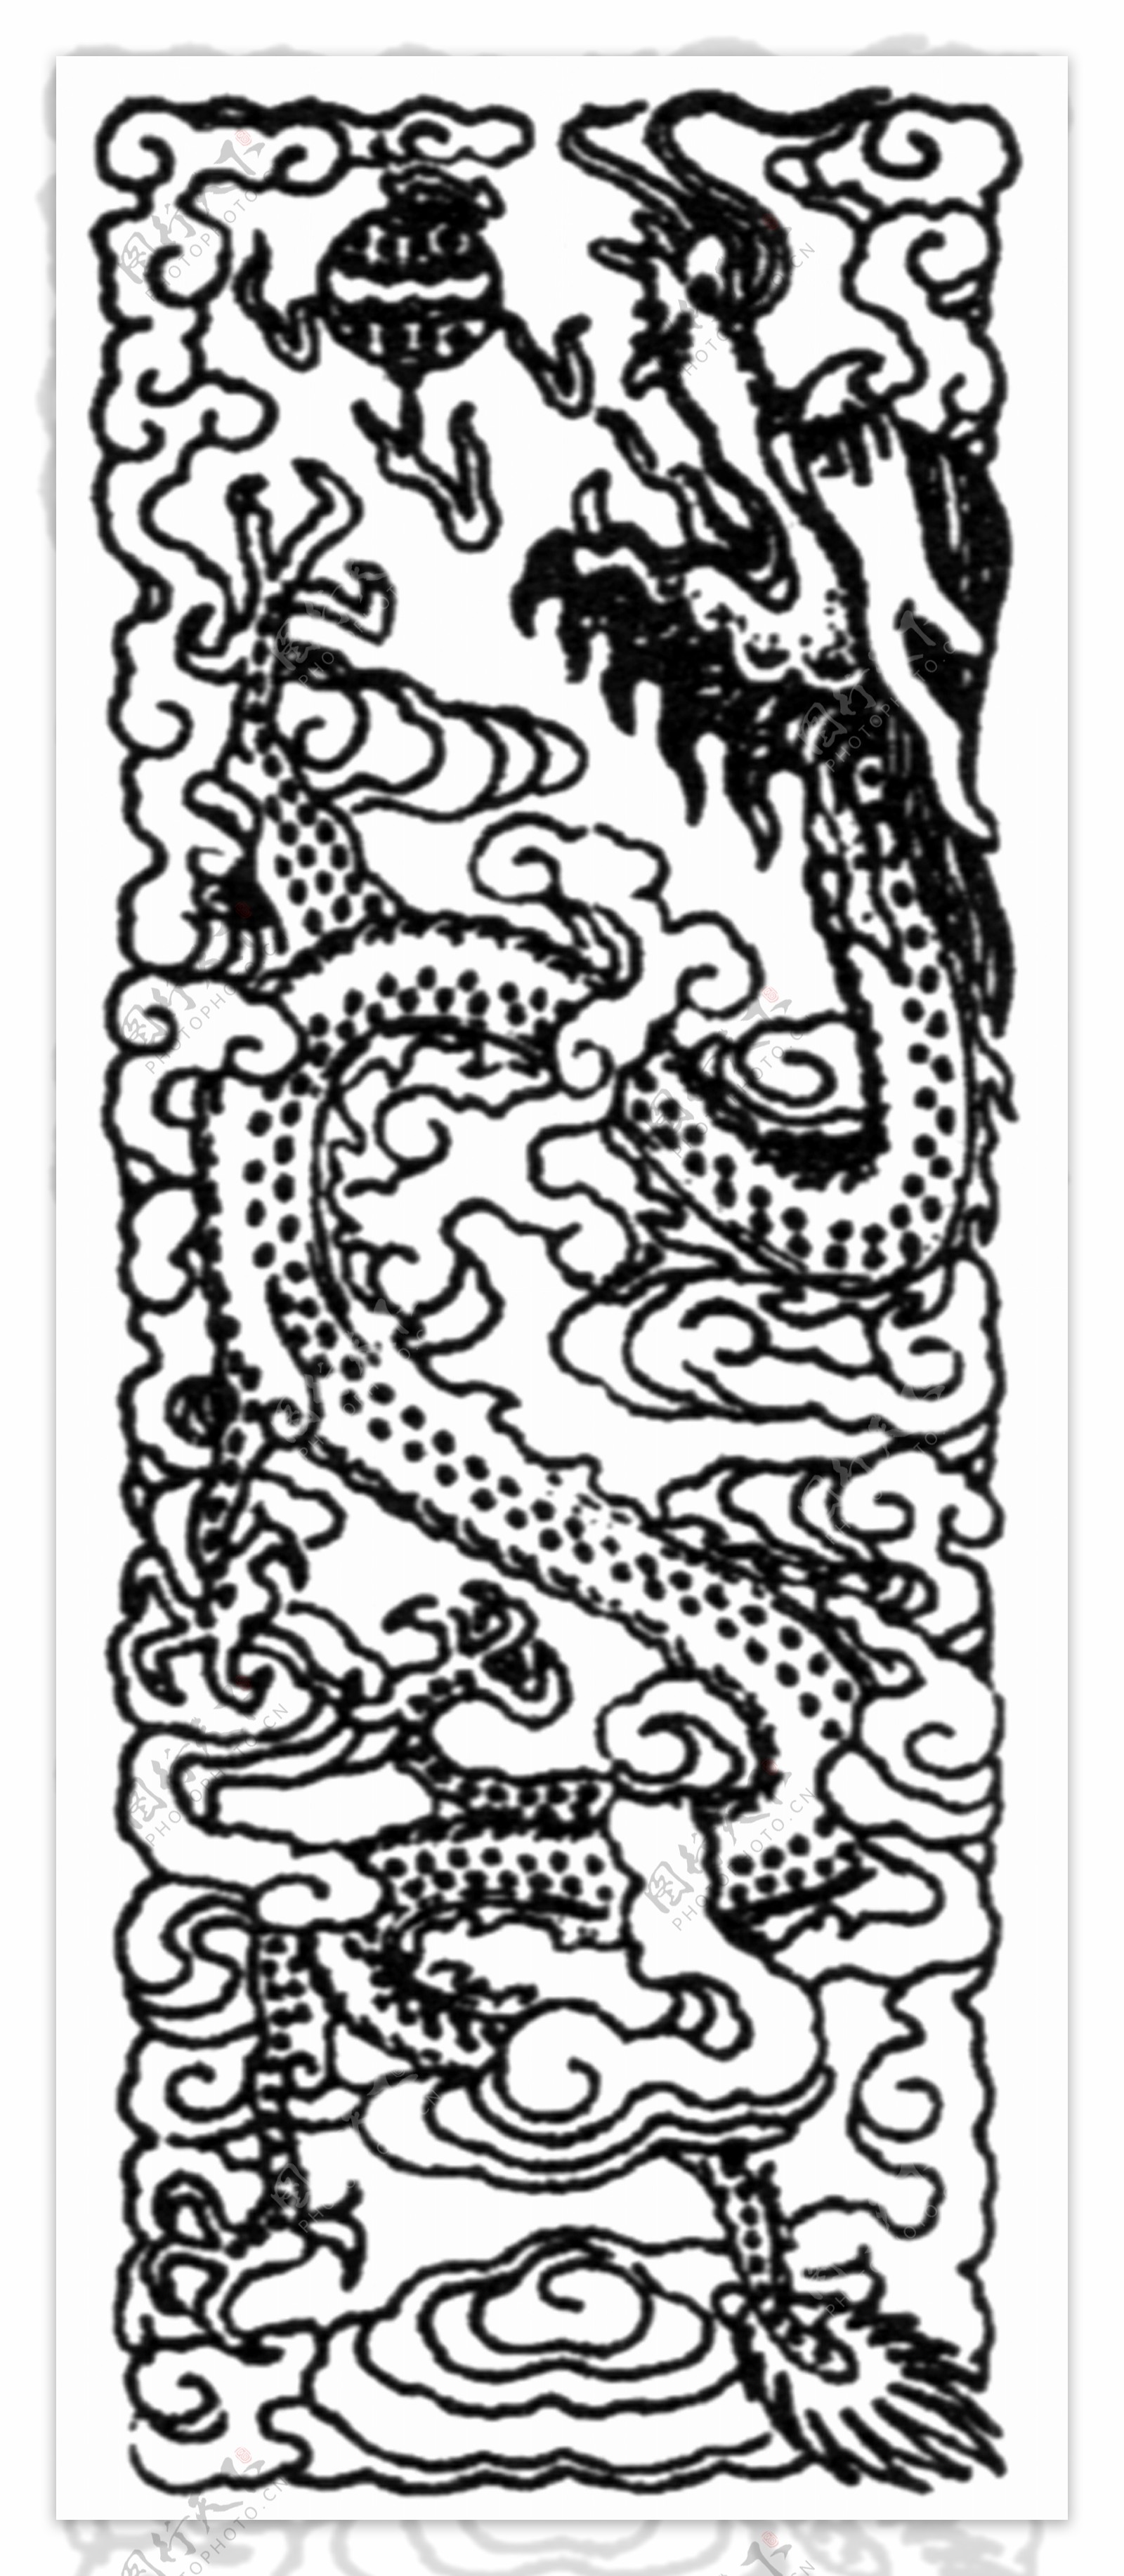 龙纹龙的图案传统图案187